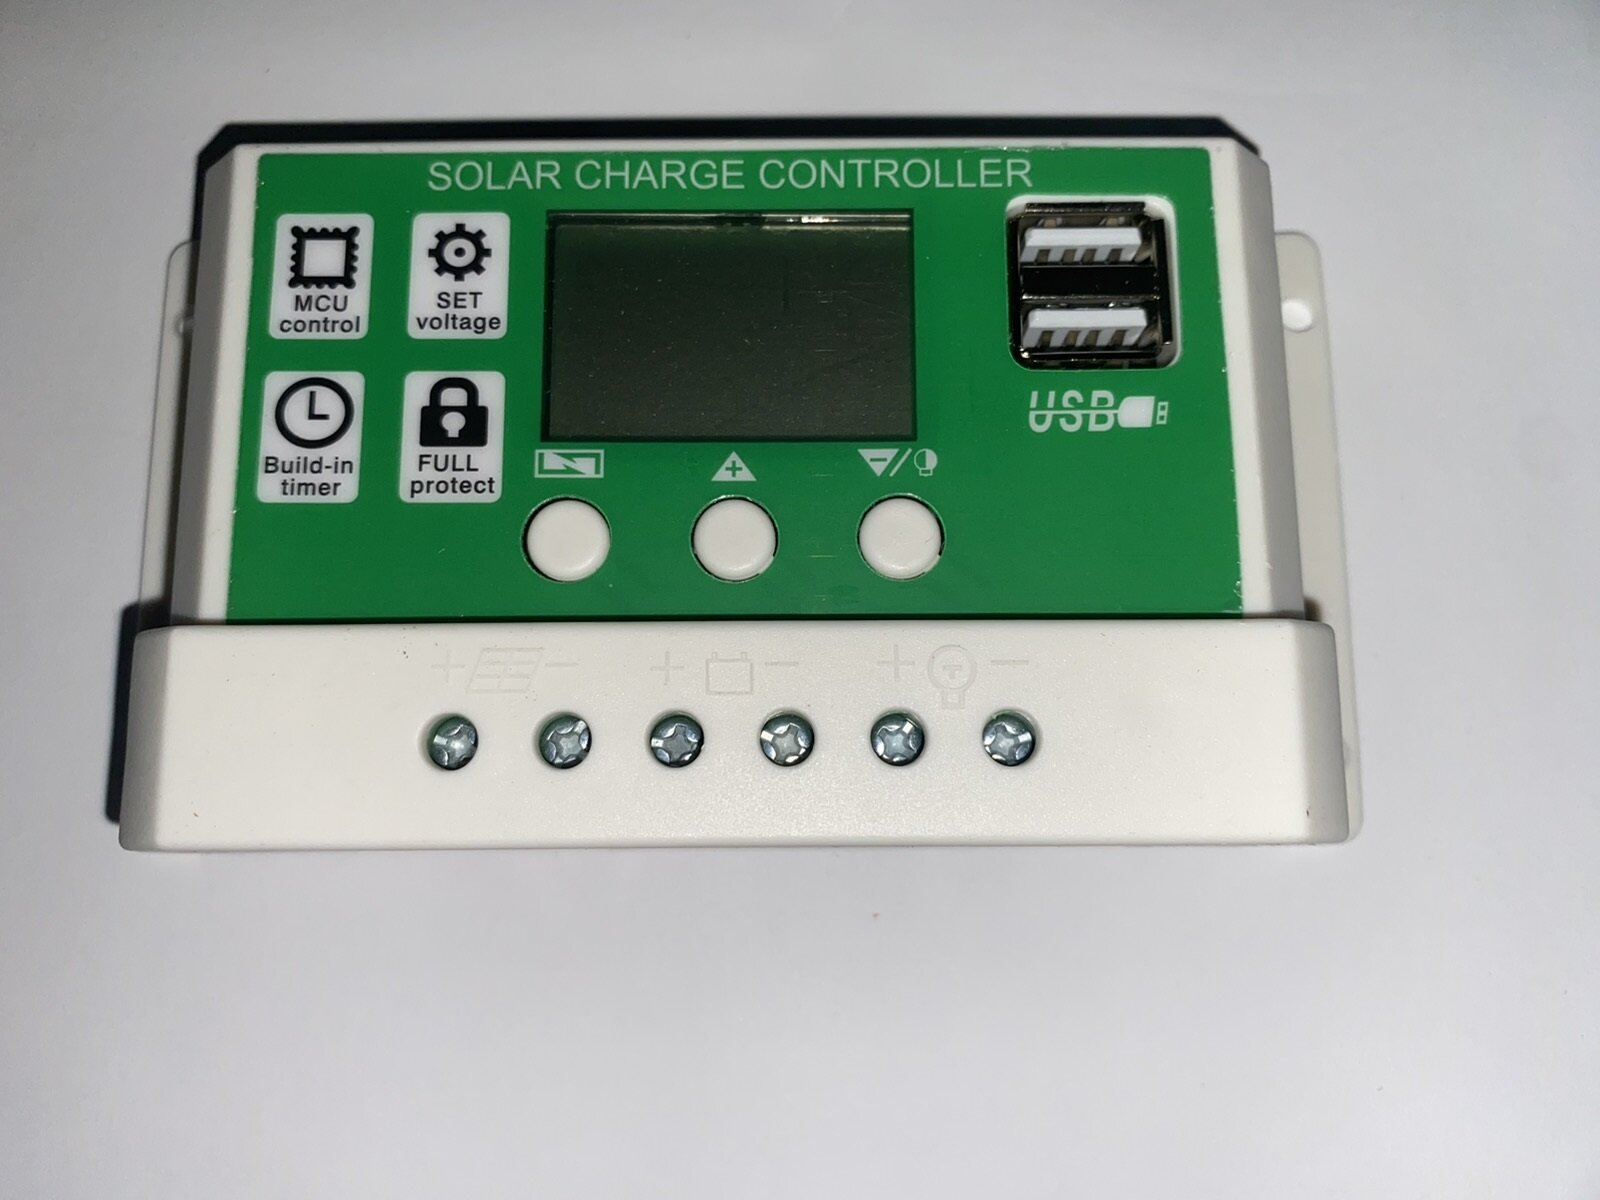 PWM контроллер заряда АКБ от солнечных батарей W88-C RBL-LI-30A